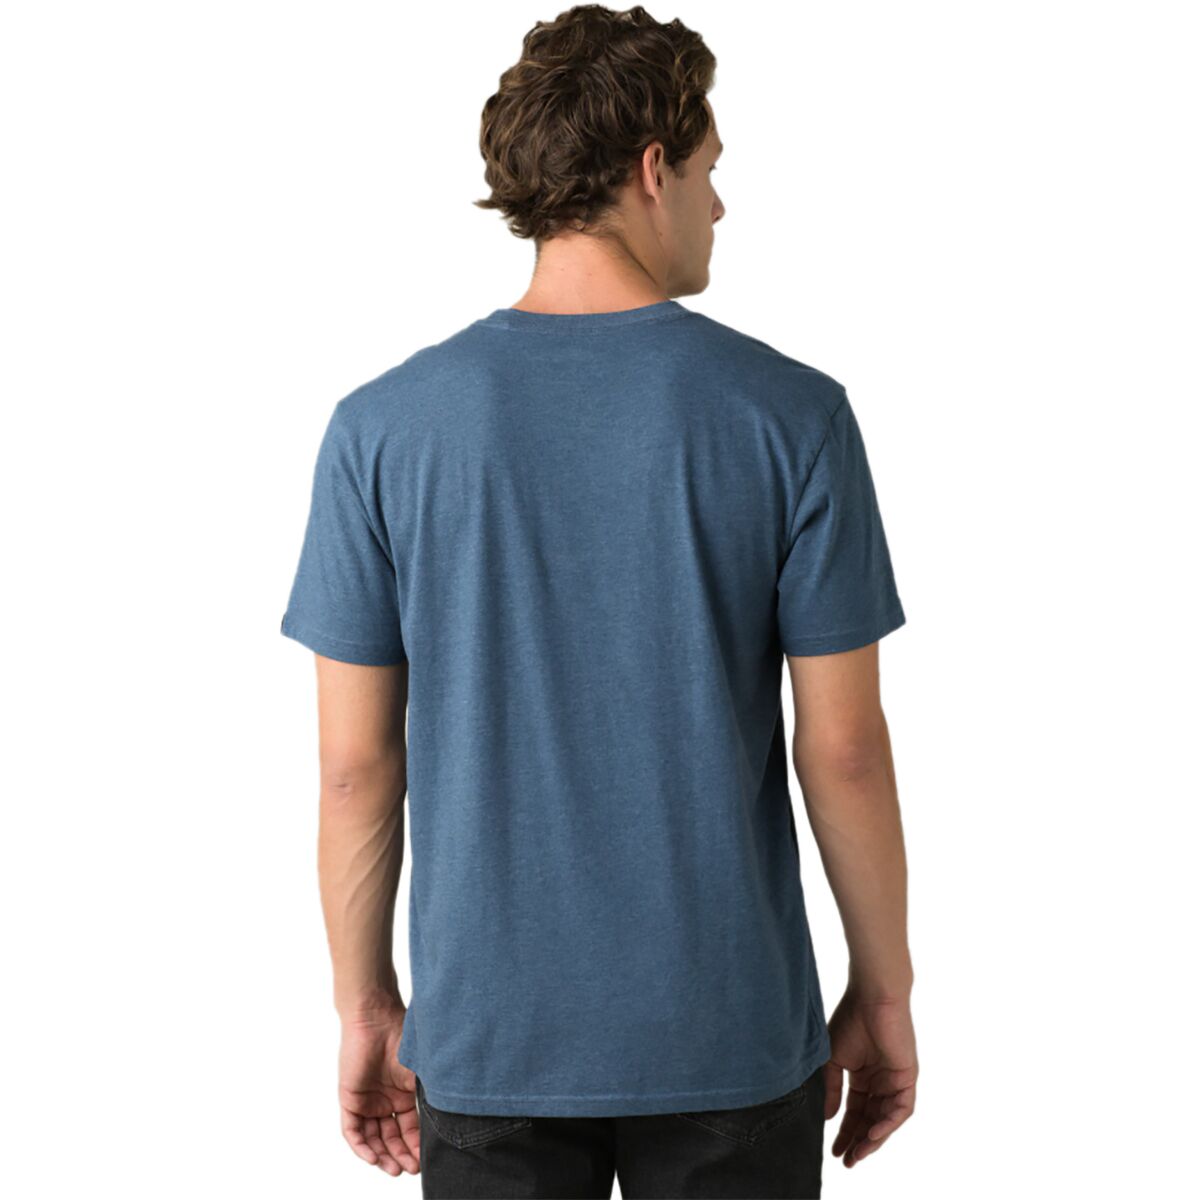 Prana Crew T-Shirt - Men's | Backcountry.com